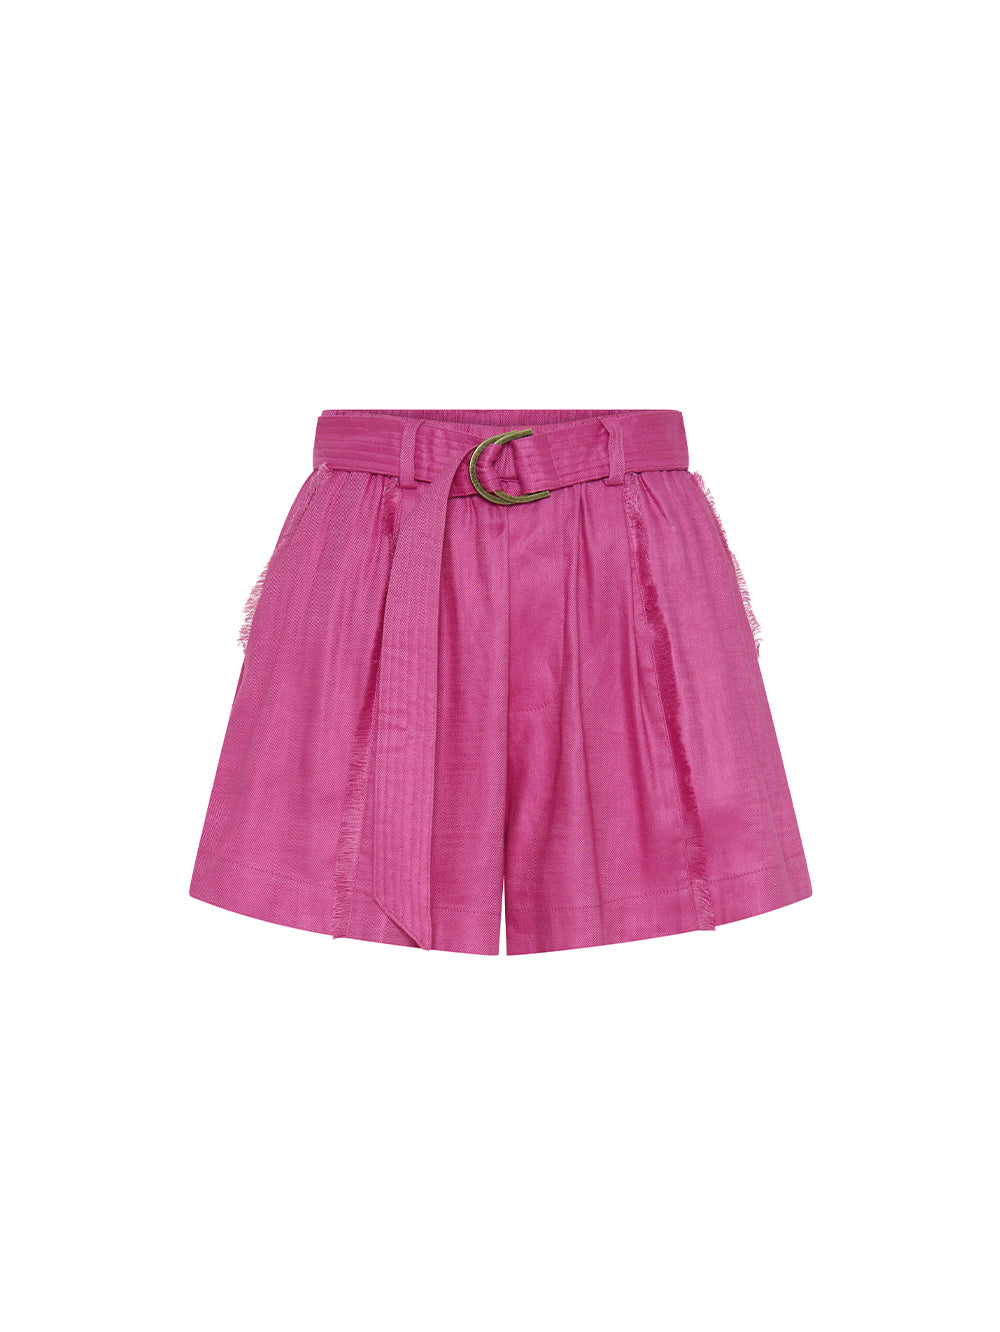 Angelina Short Pink KIVARI | Hot pink short